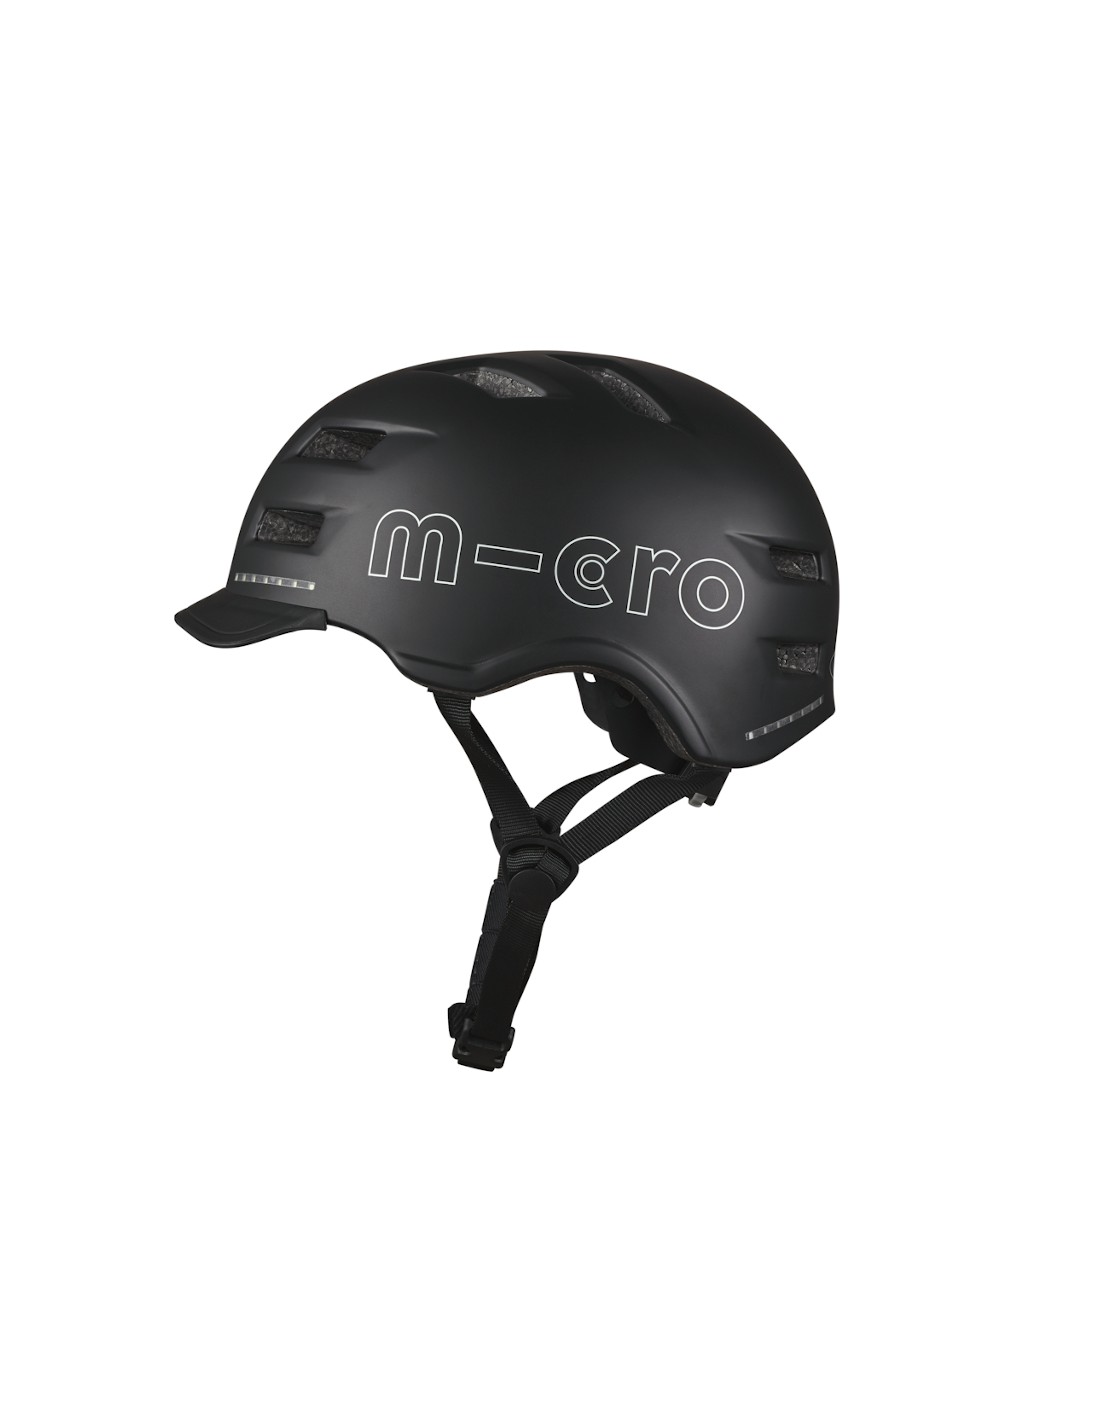 Micro Helm Smart Scooterhelmgröße - L, von Micro Scooter